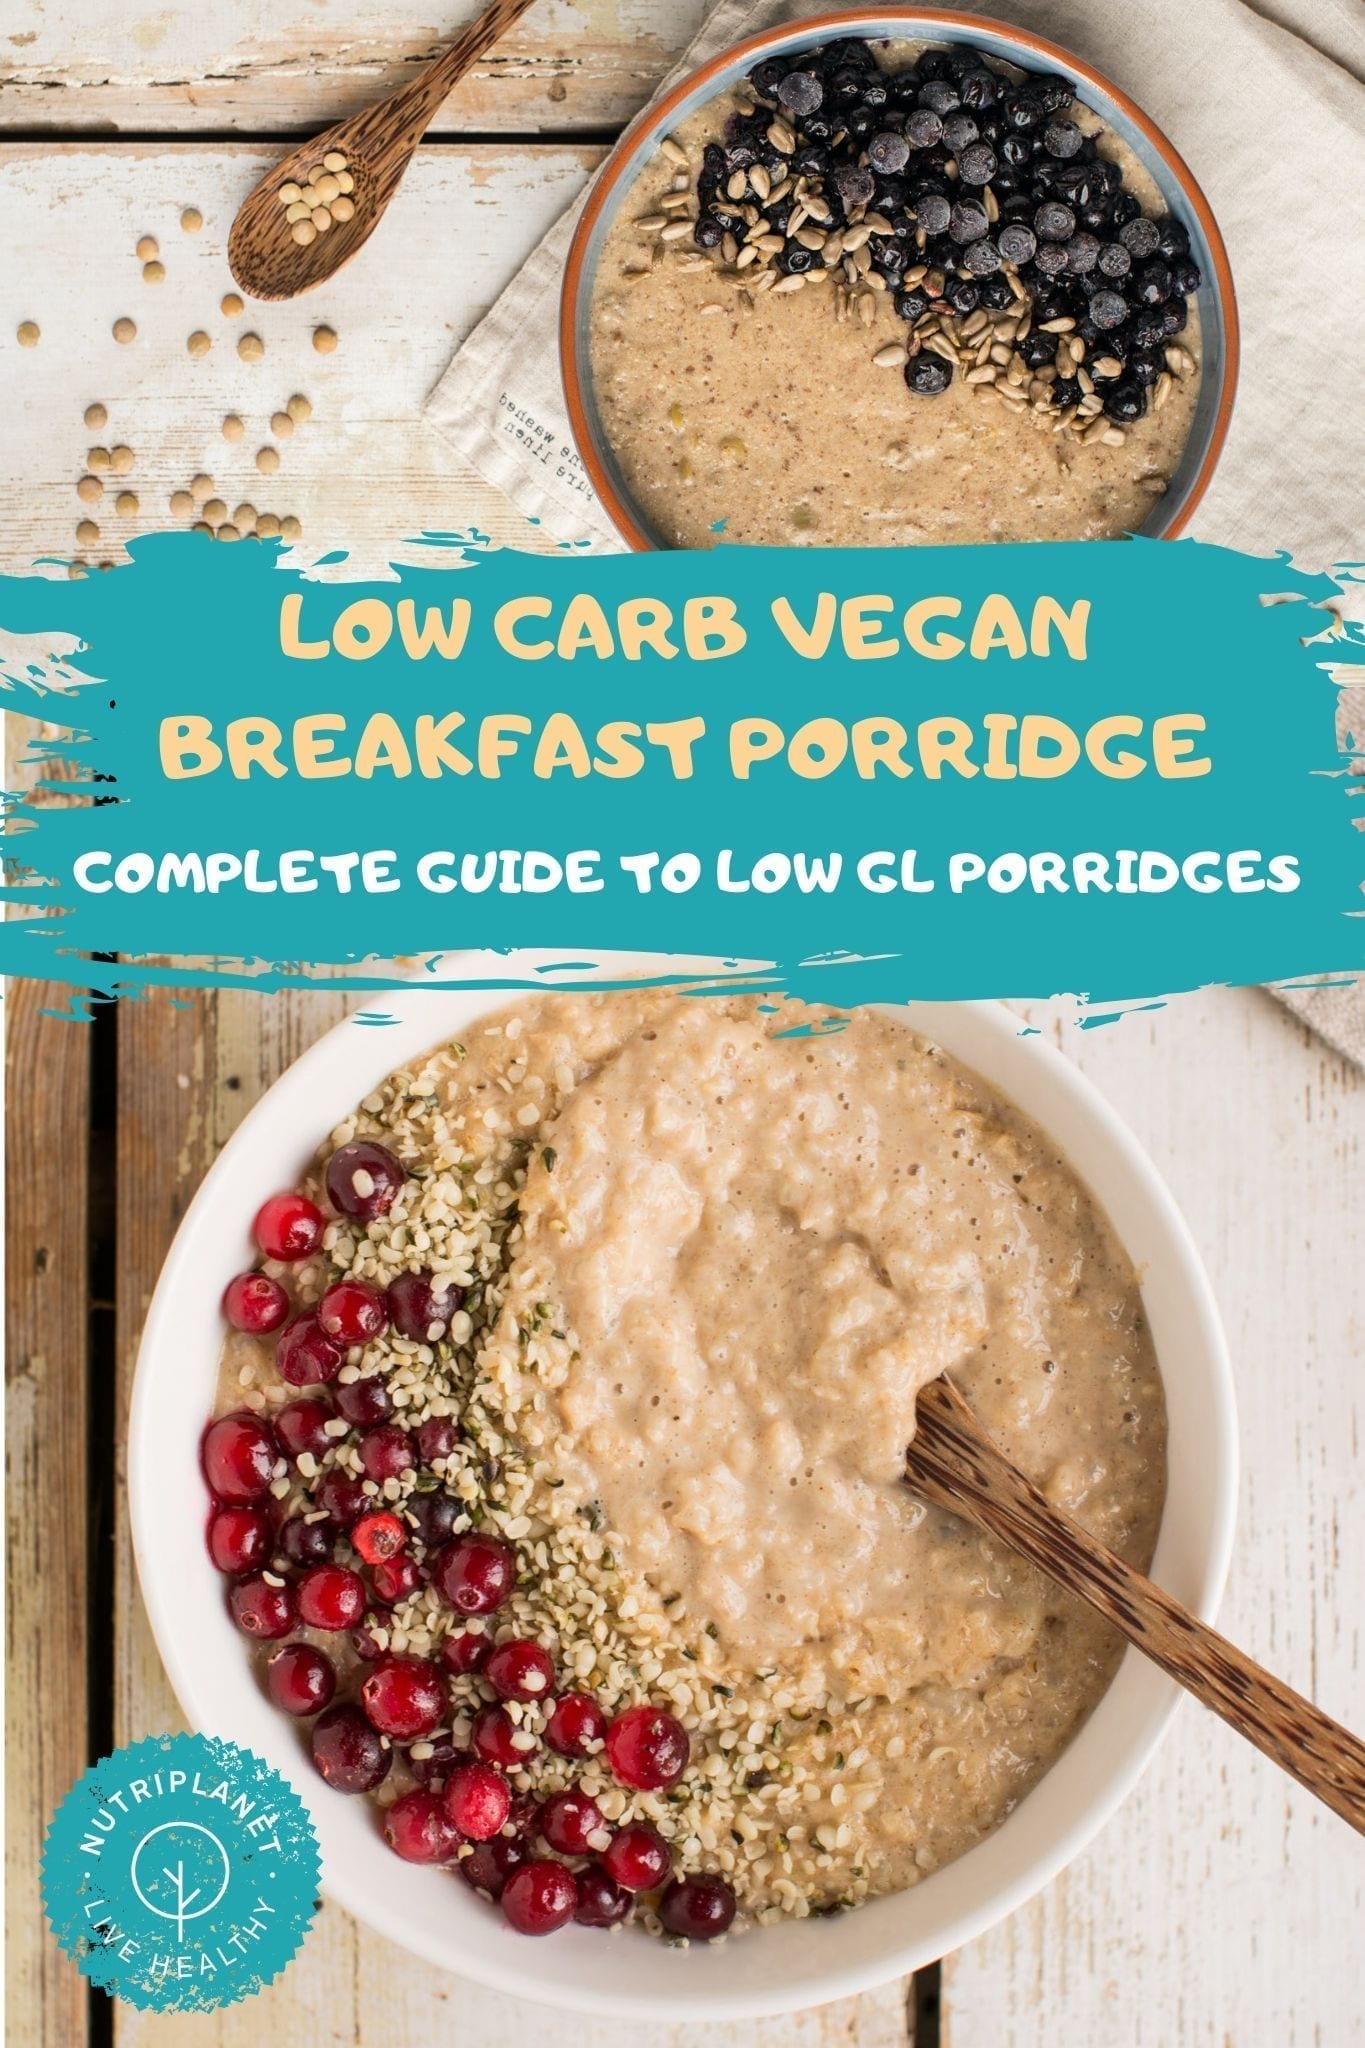 Low Carb Vegan Breakfast Porridge Guide